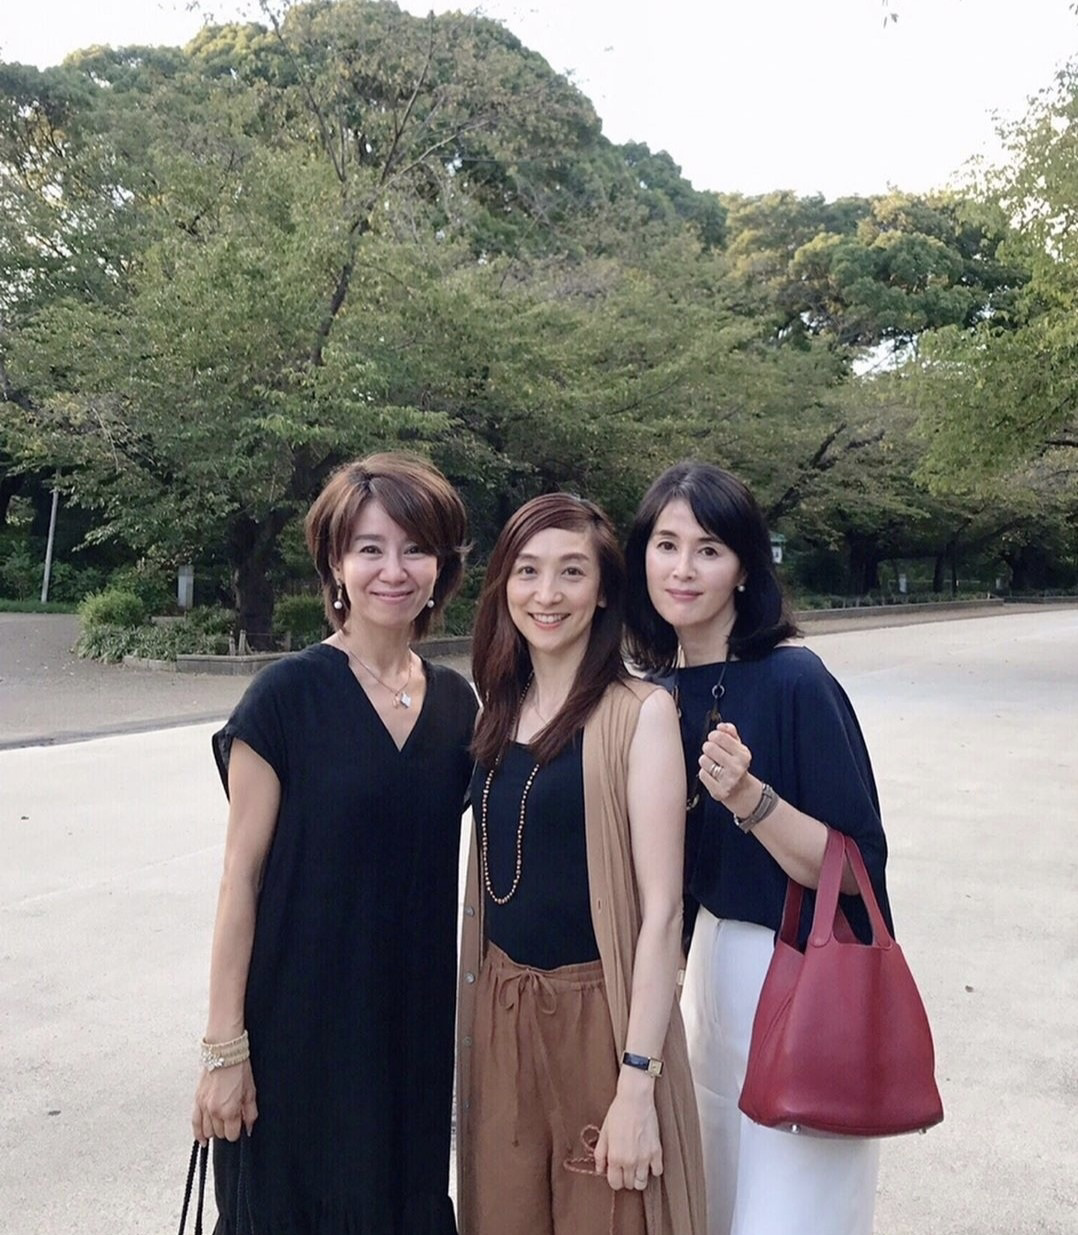 日本家庭主妇图片 从发丝到脚都透着精致感